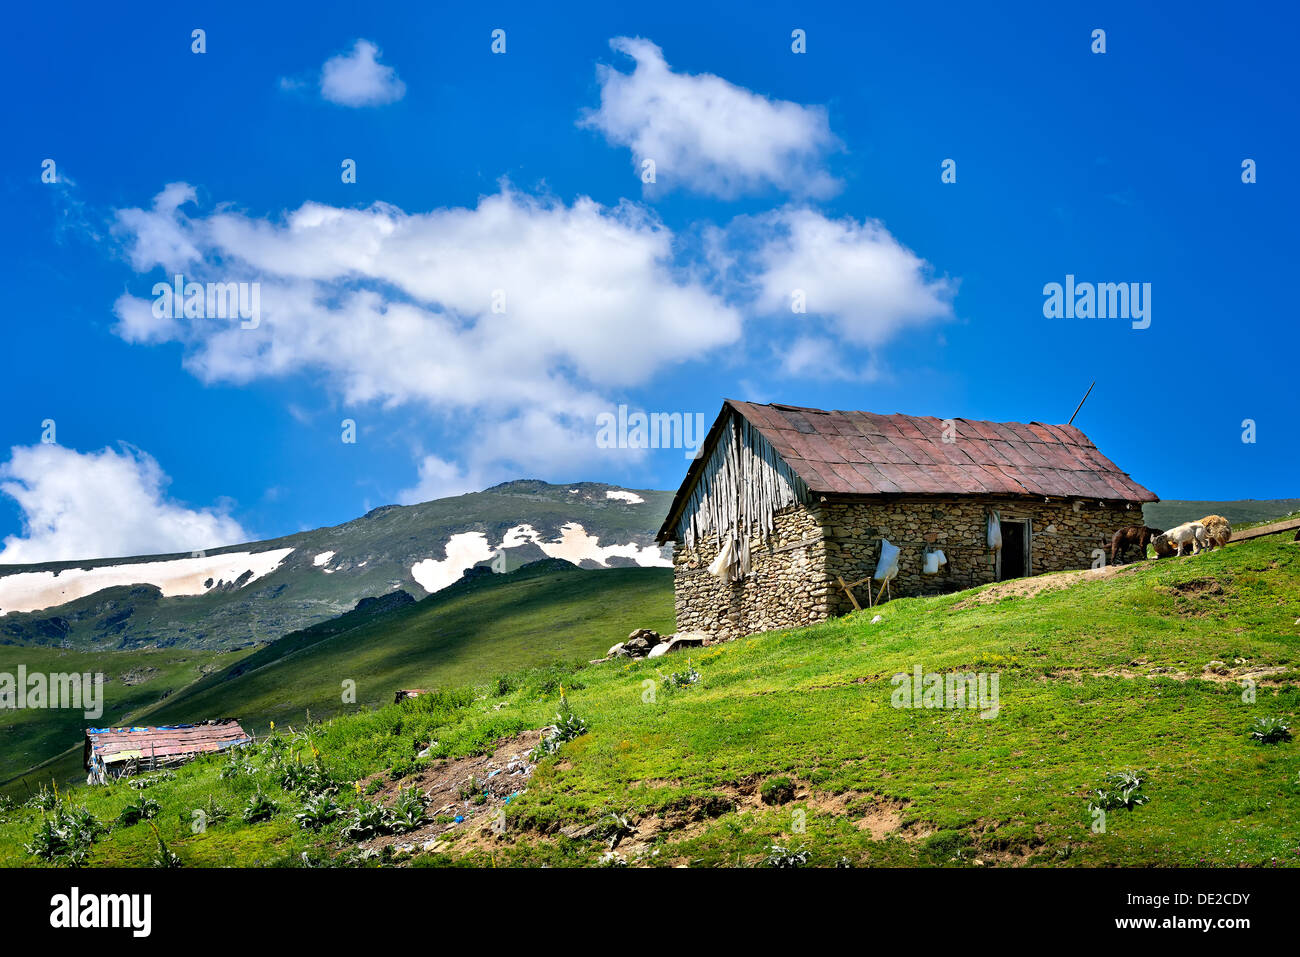 Landschaft in Mazedonien: Berge, Wälder, Wiesen und einem Bauernhof. Stockfoto